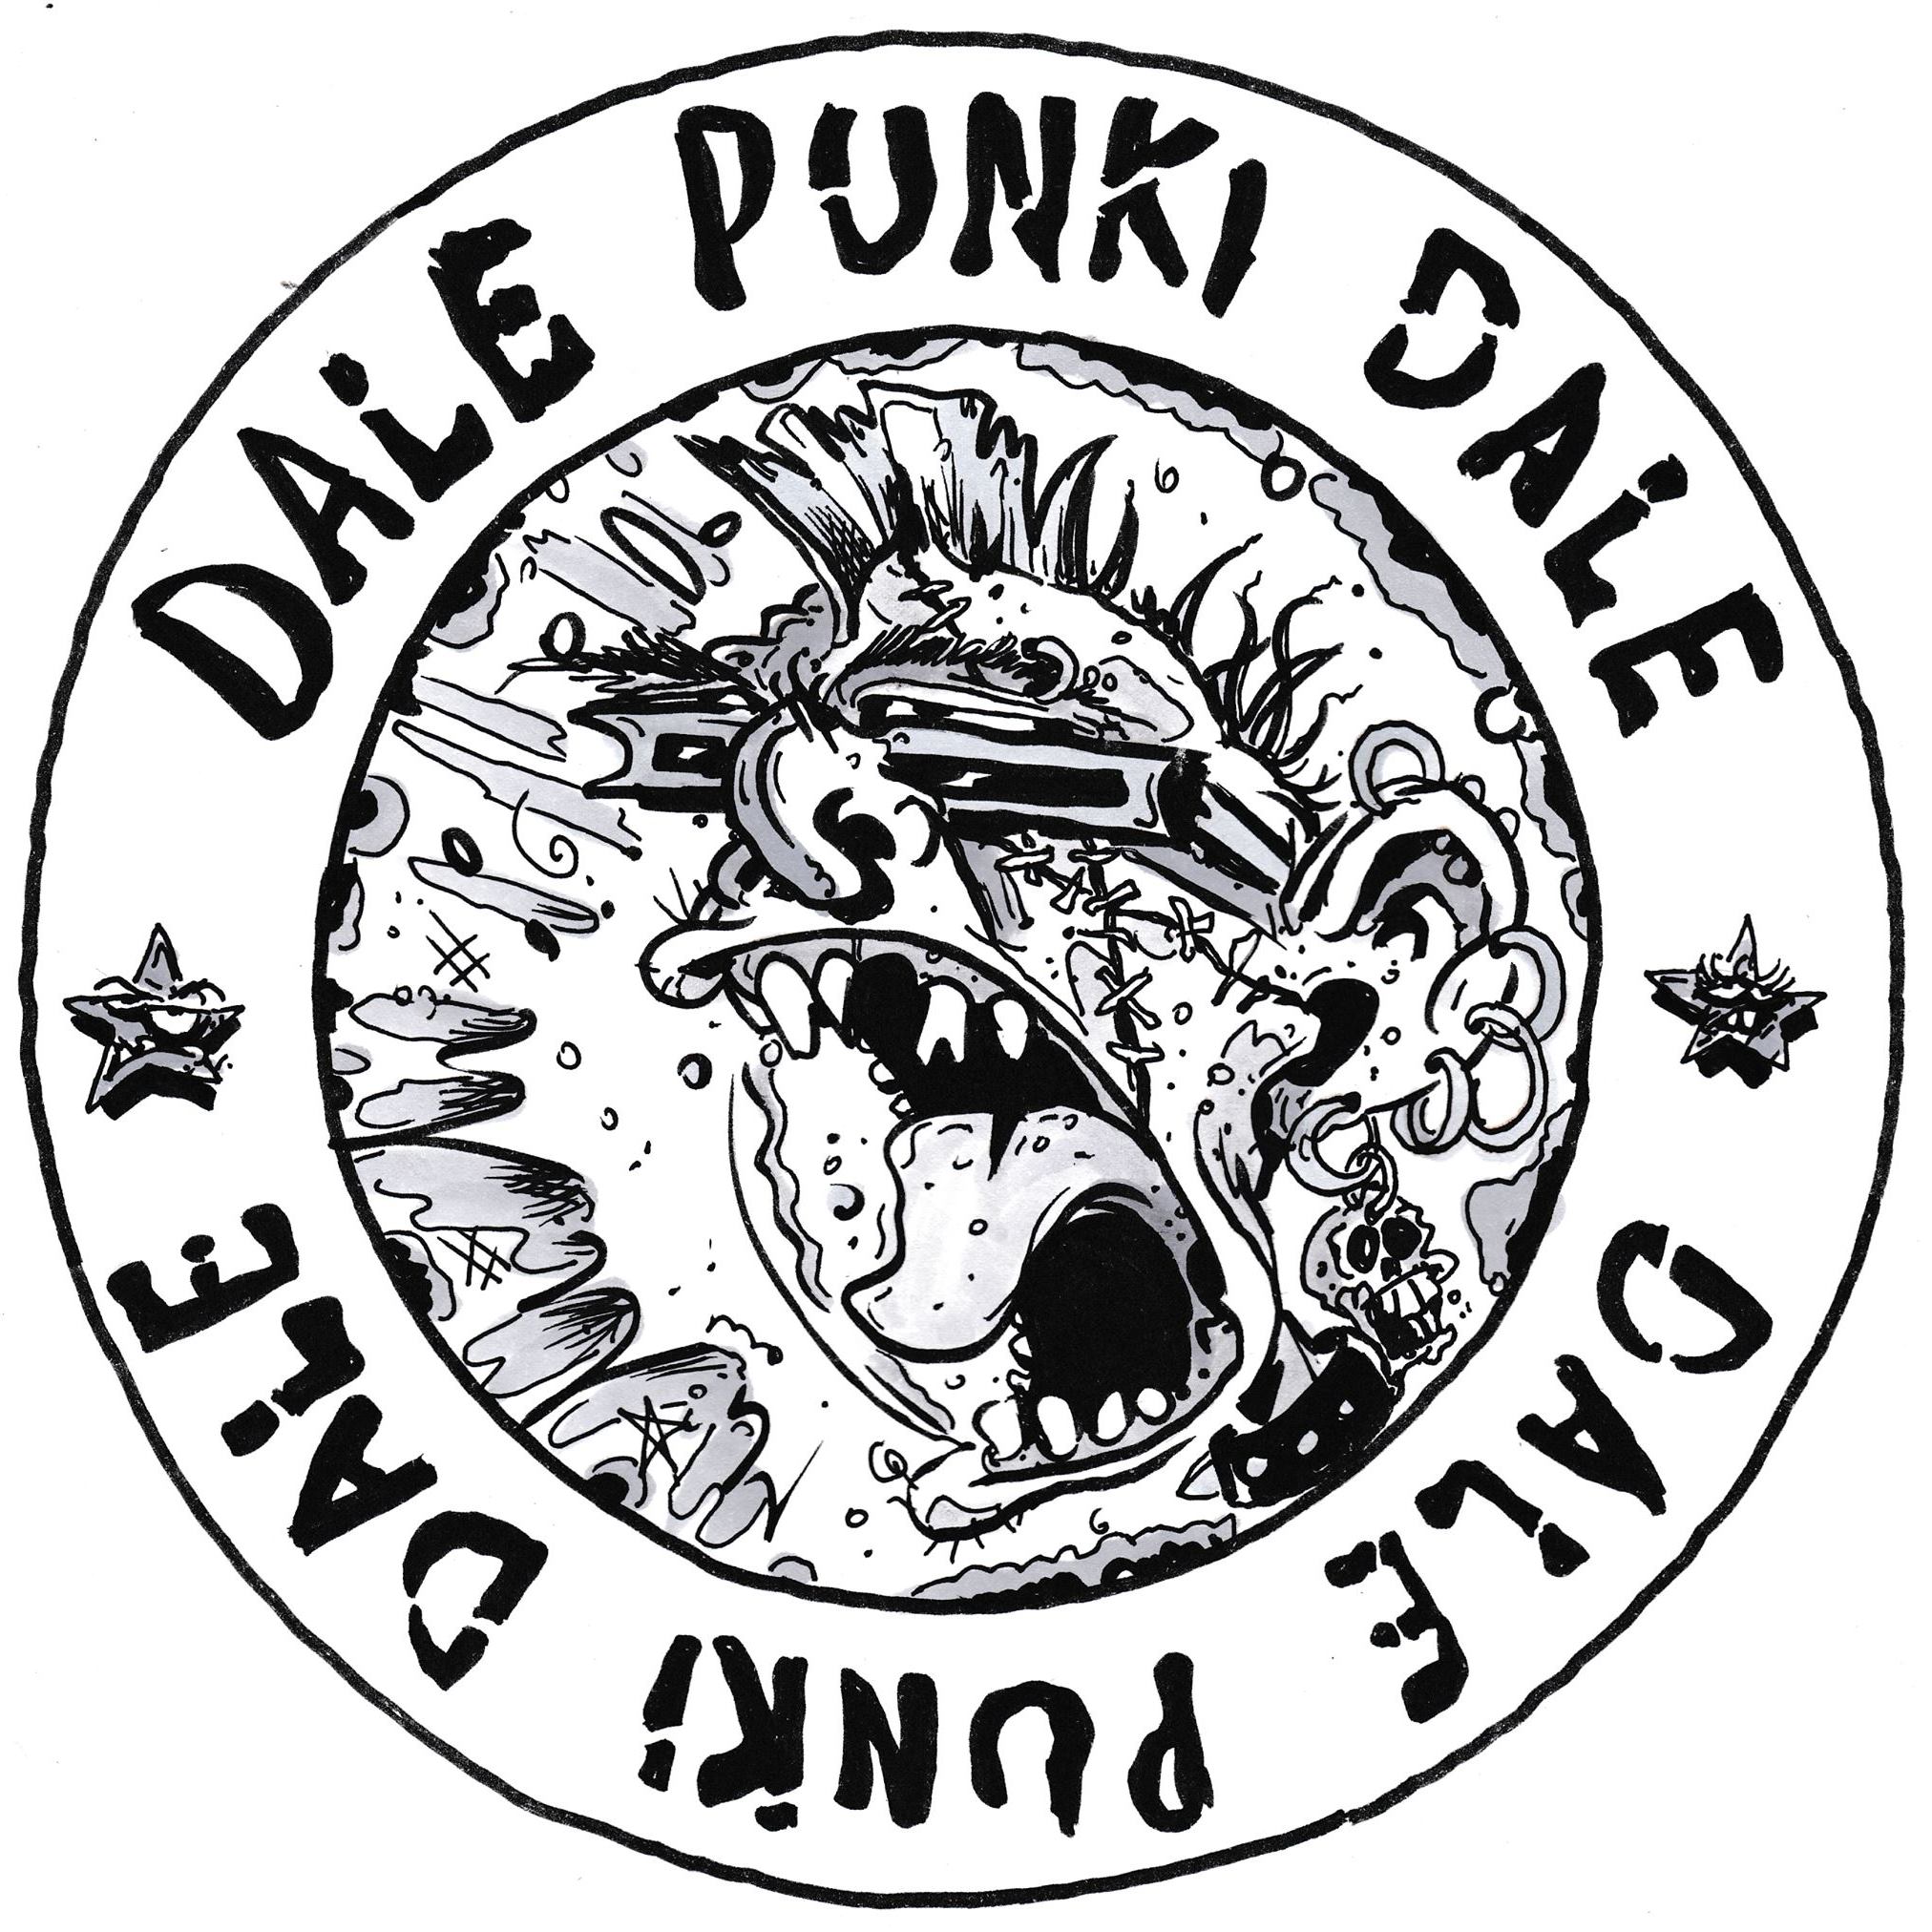 Programa del 30 de mayo de la emisora Dale Punki Dale